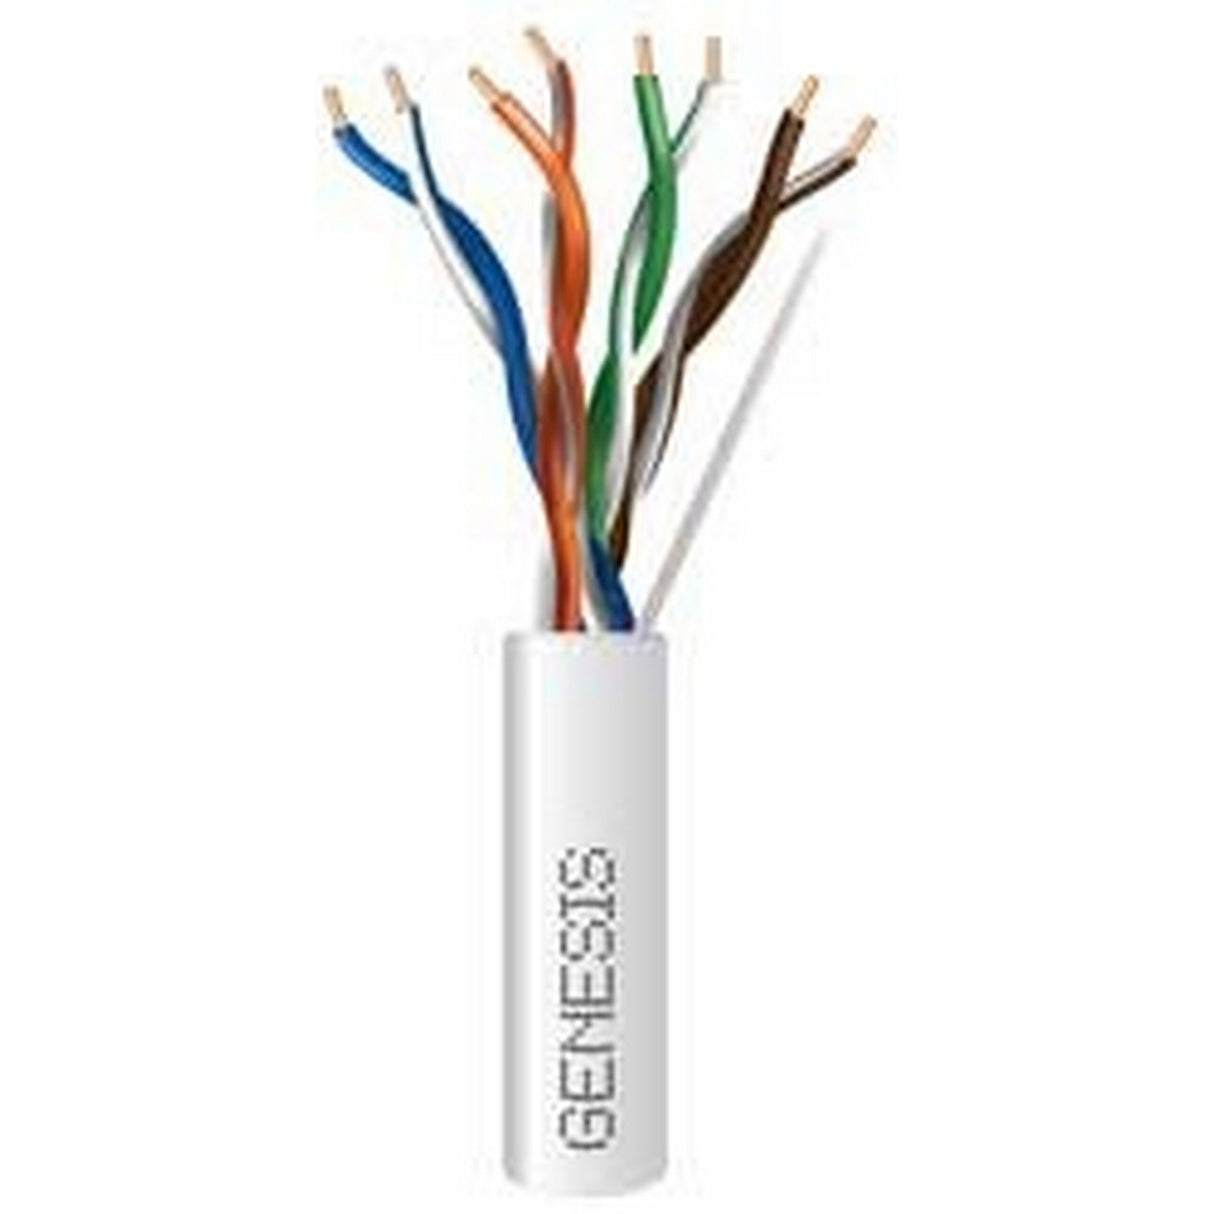 Genesis Cat 6 Plus 23G Plenum Cable 1000 Foot Reel In Box, White